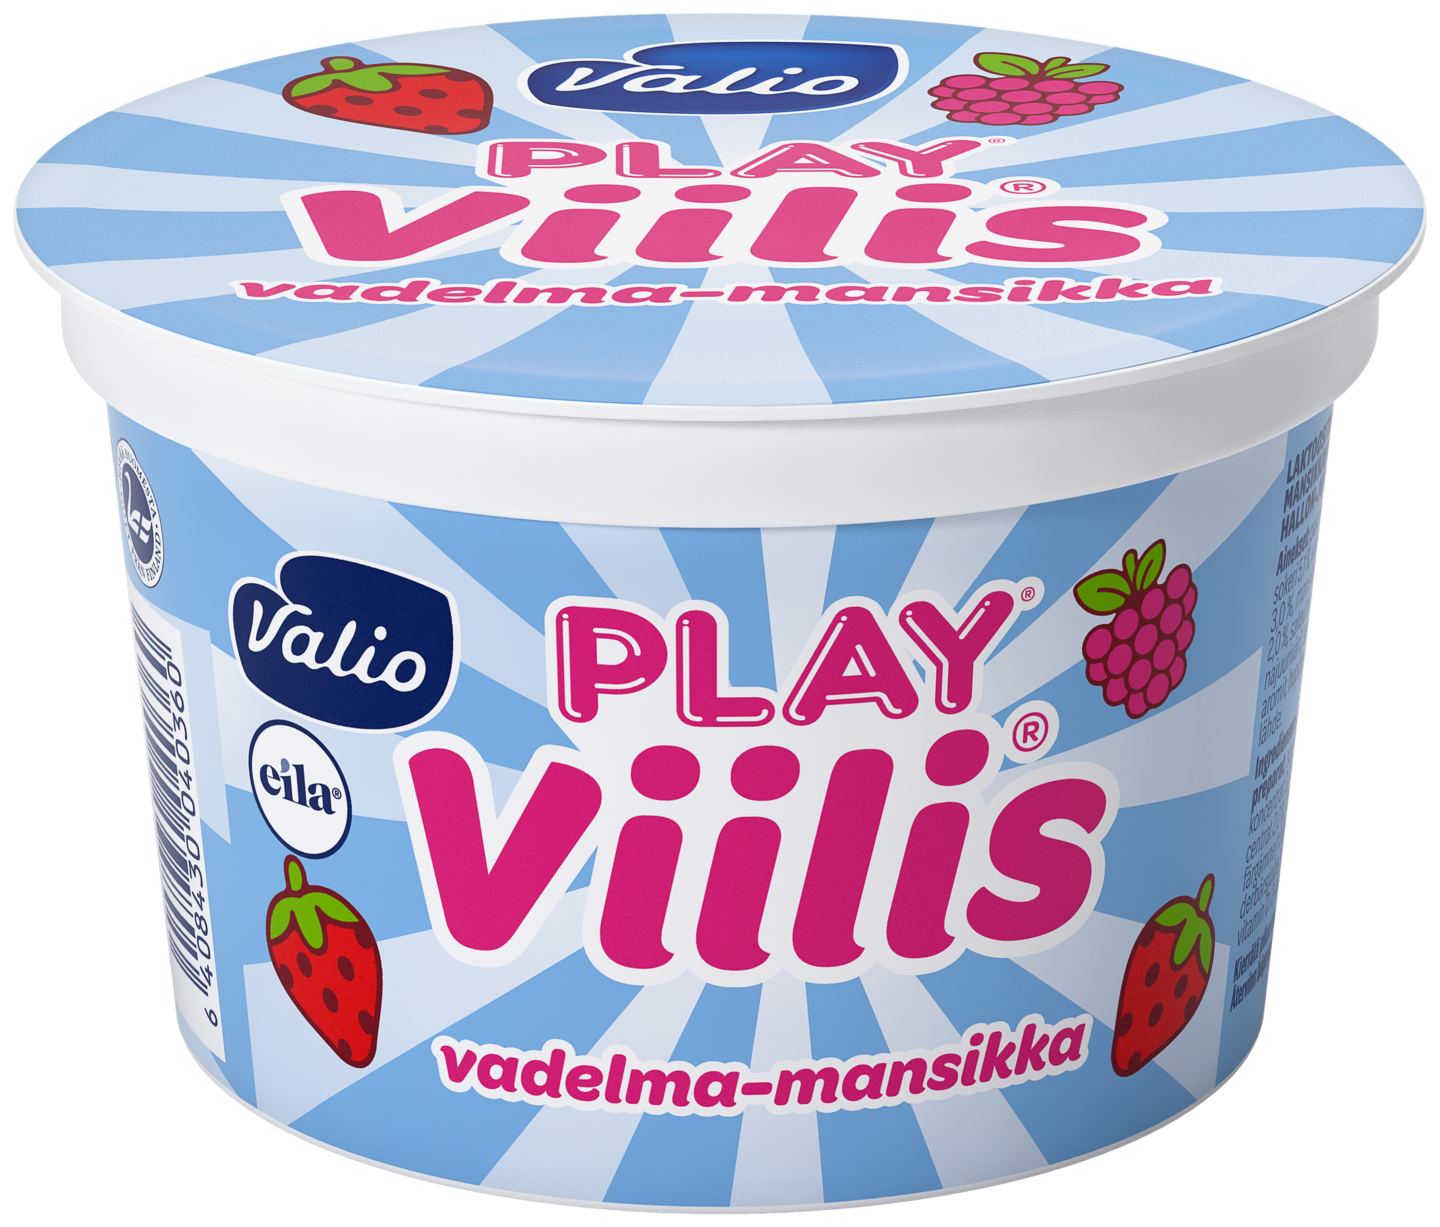 Безлактозное мороженое купить. Безлактозное мороженое. Безлактозные конфеты. Viili. Valio 832198.